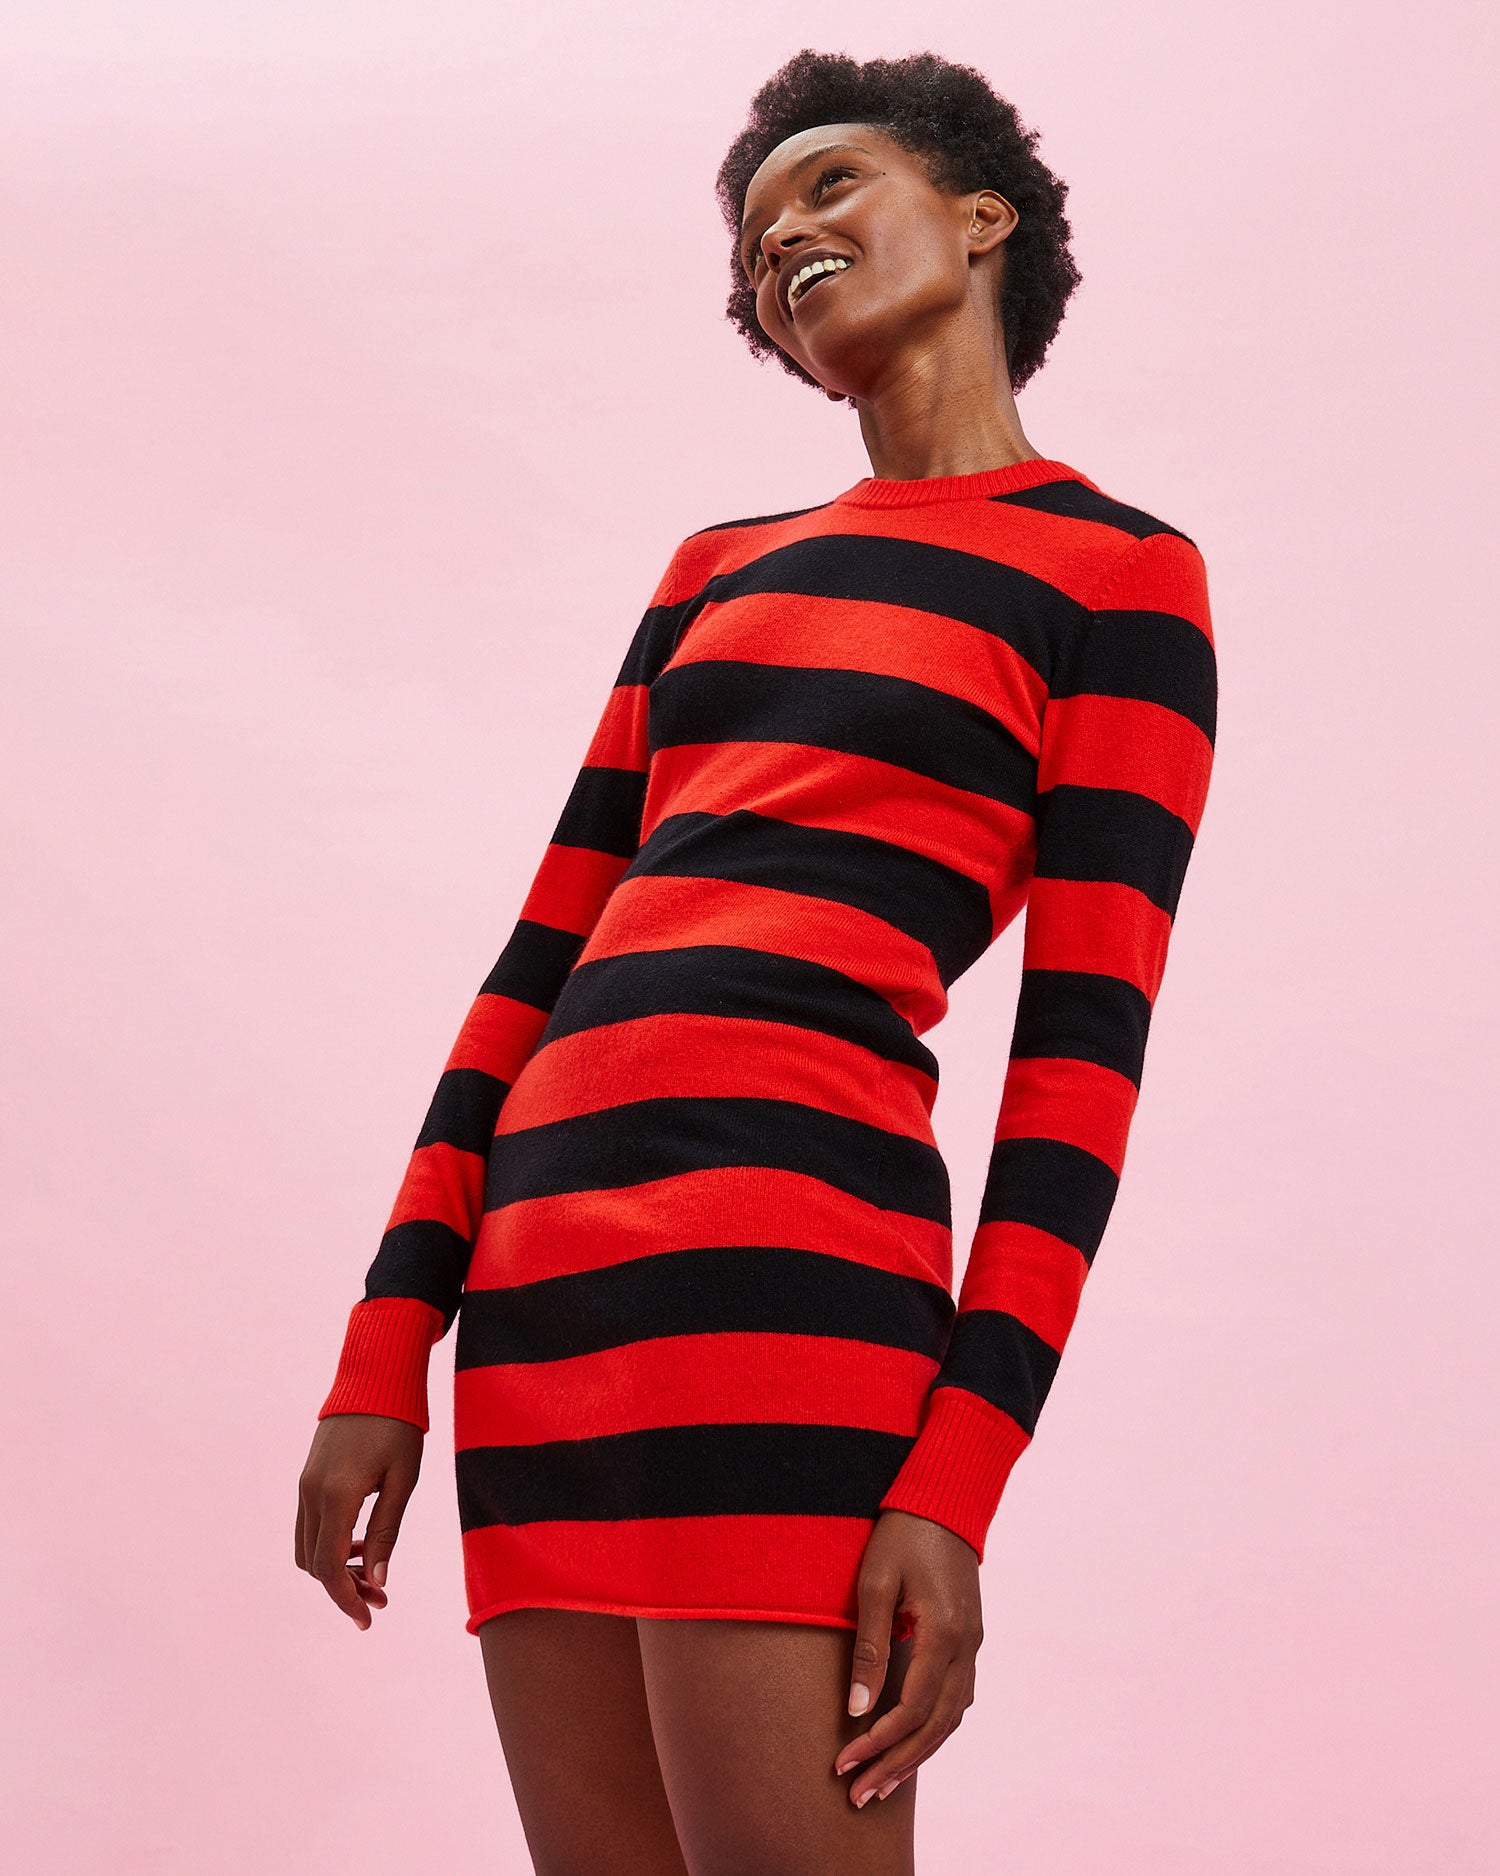 Model wearing the Black & Poppy Stripe Long Sleeve Dress